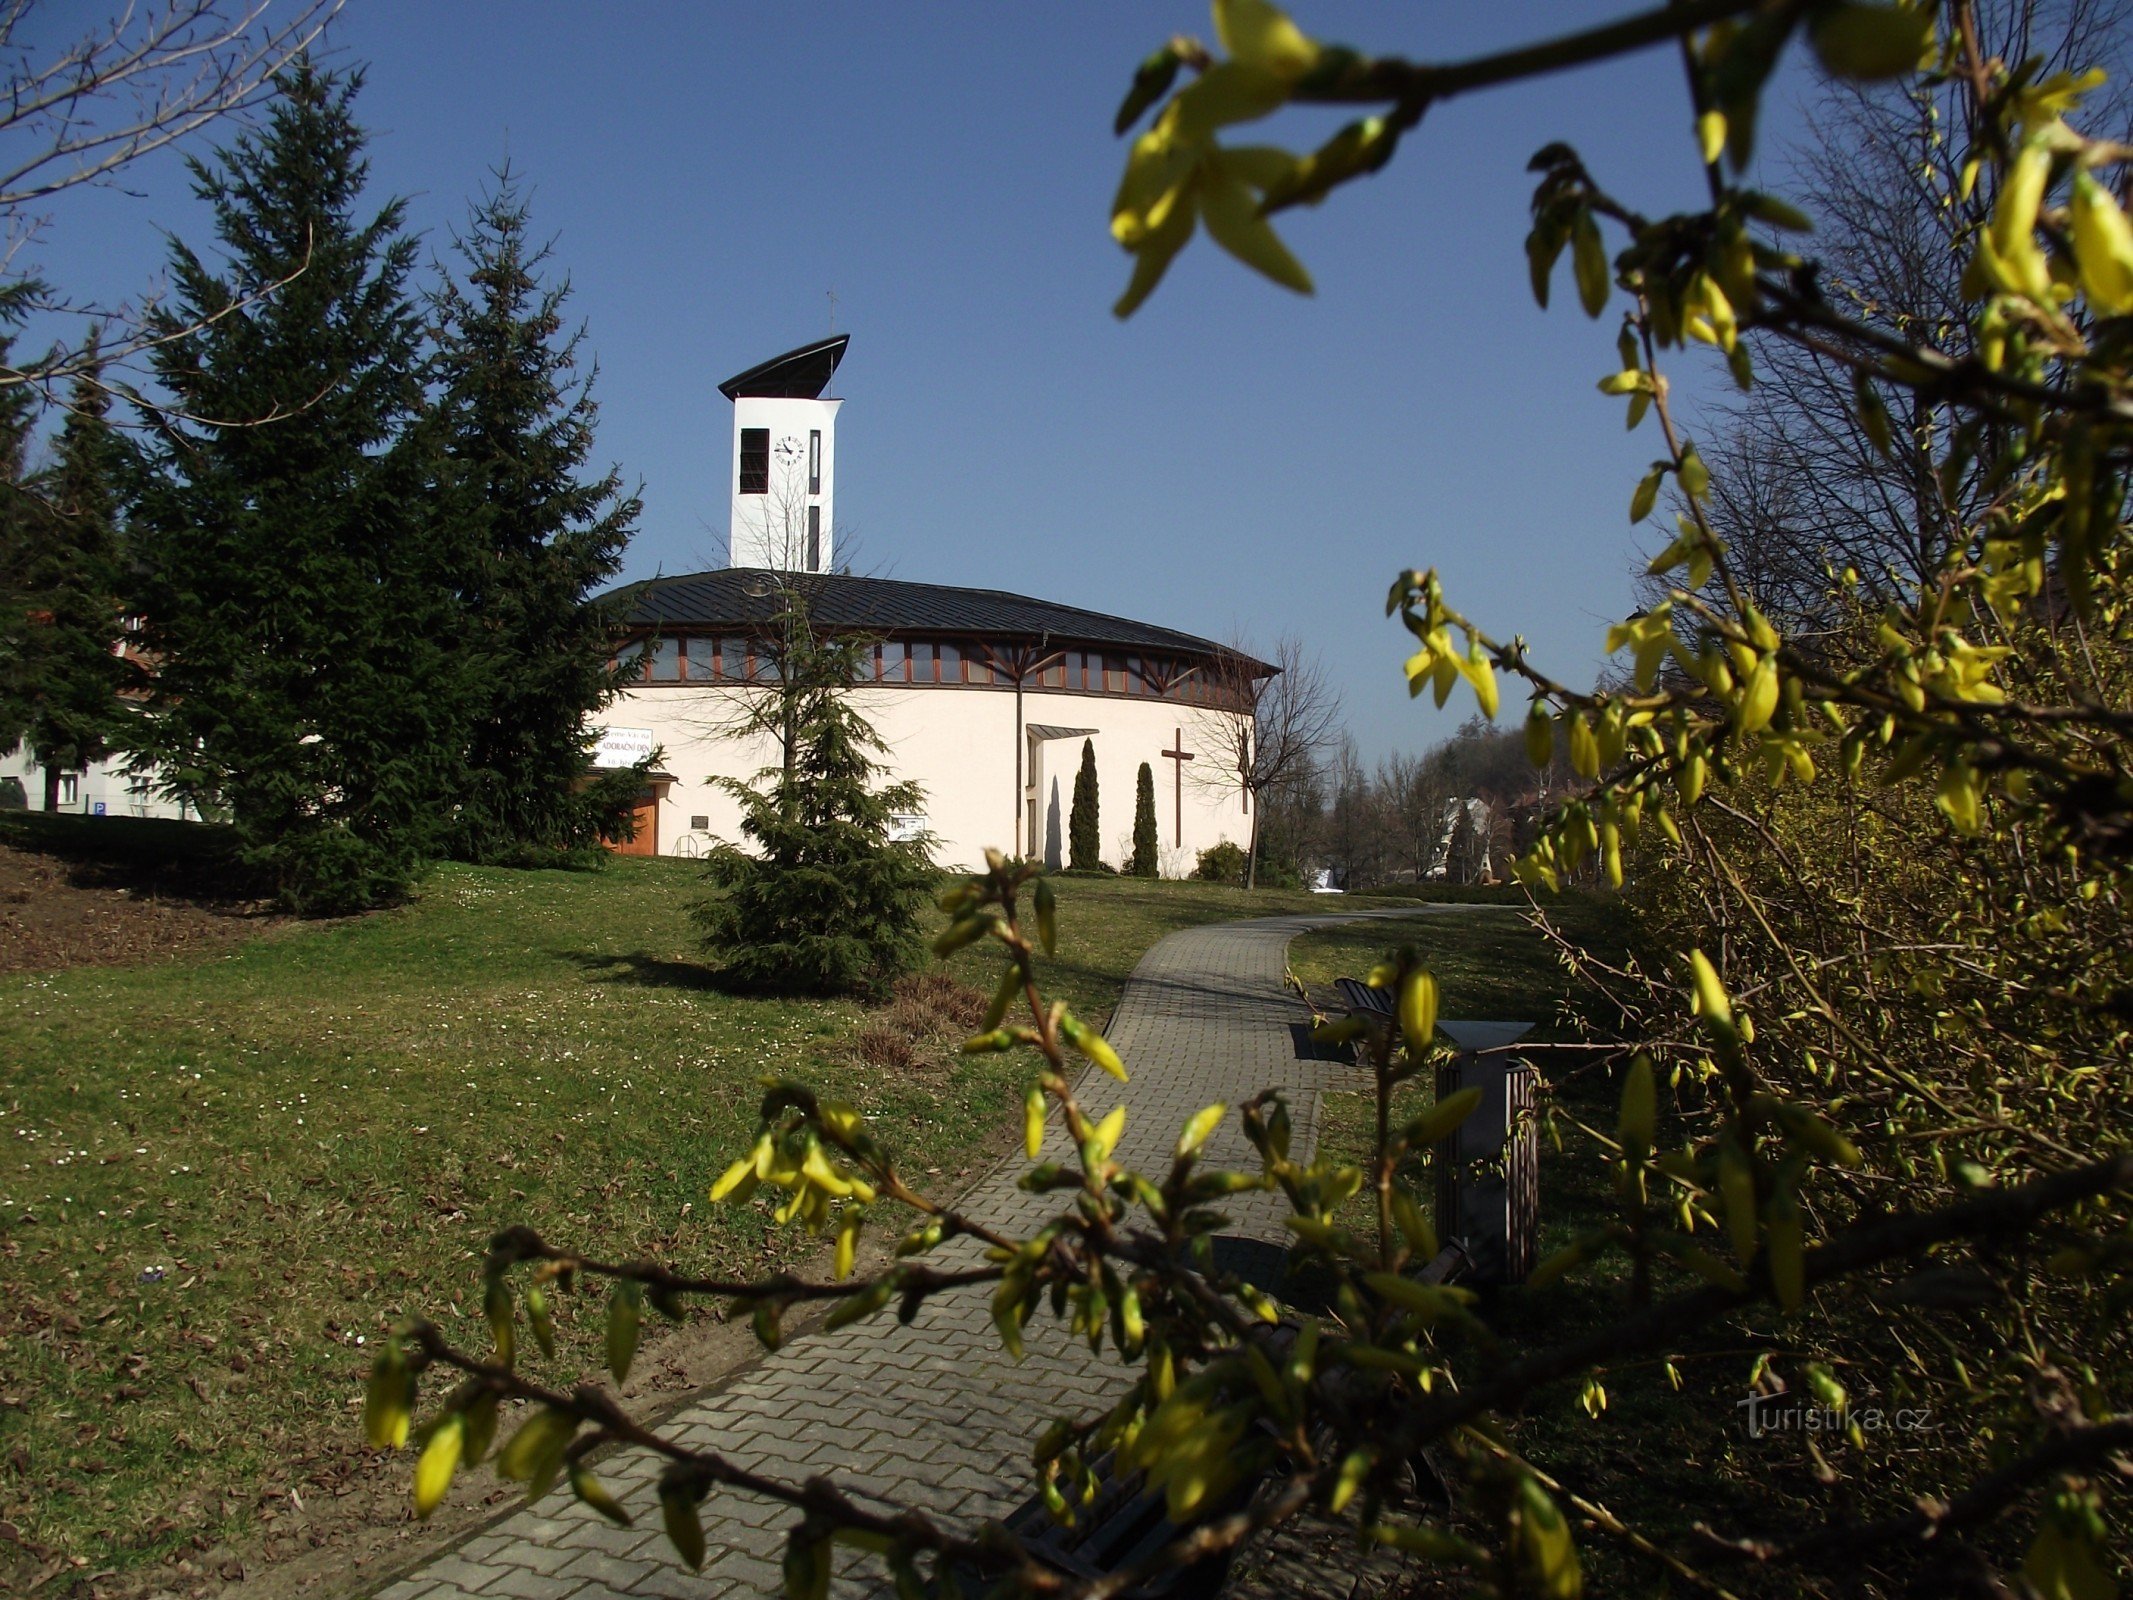 Luhačovice – Szent Család templom (Szent József templom)